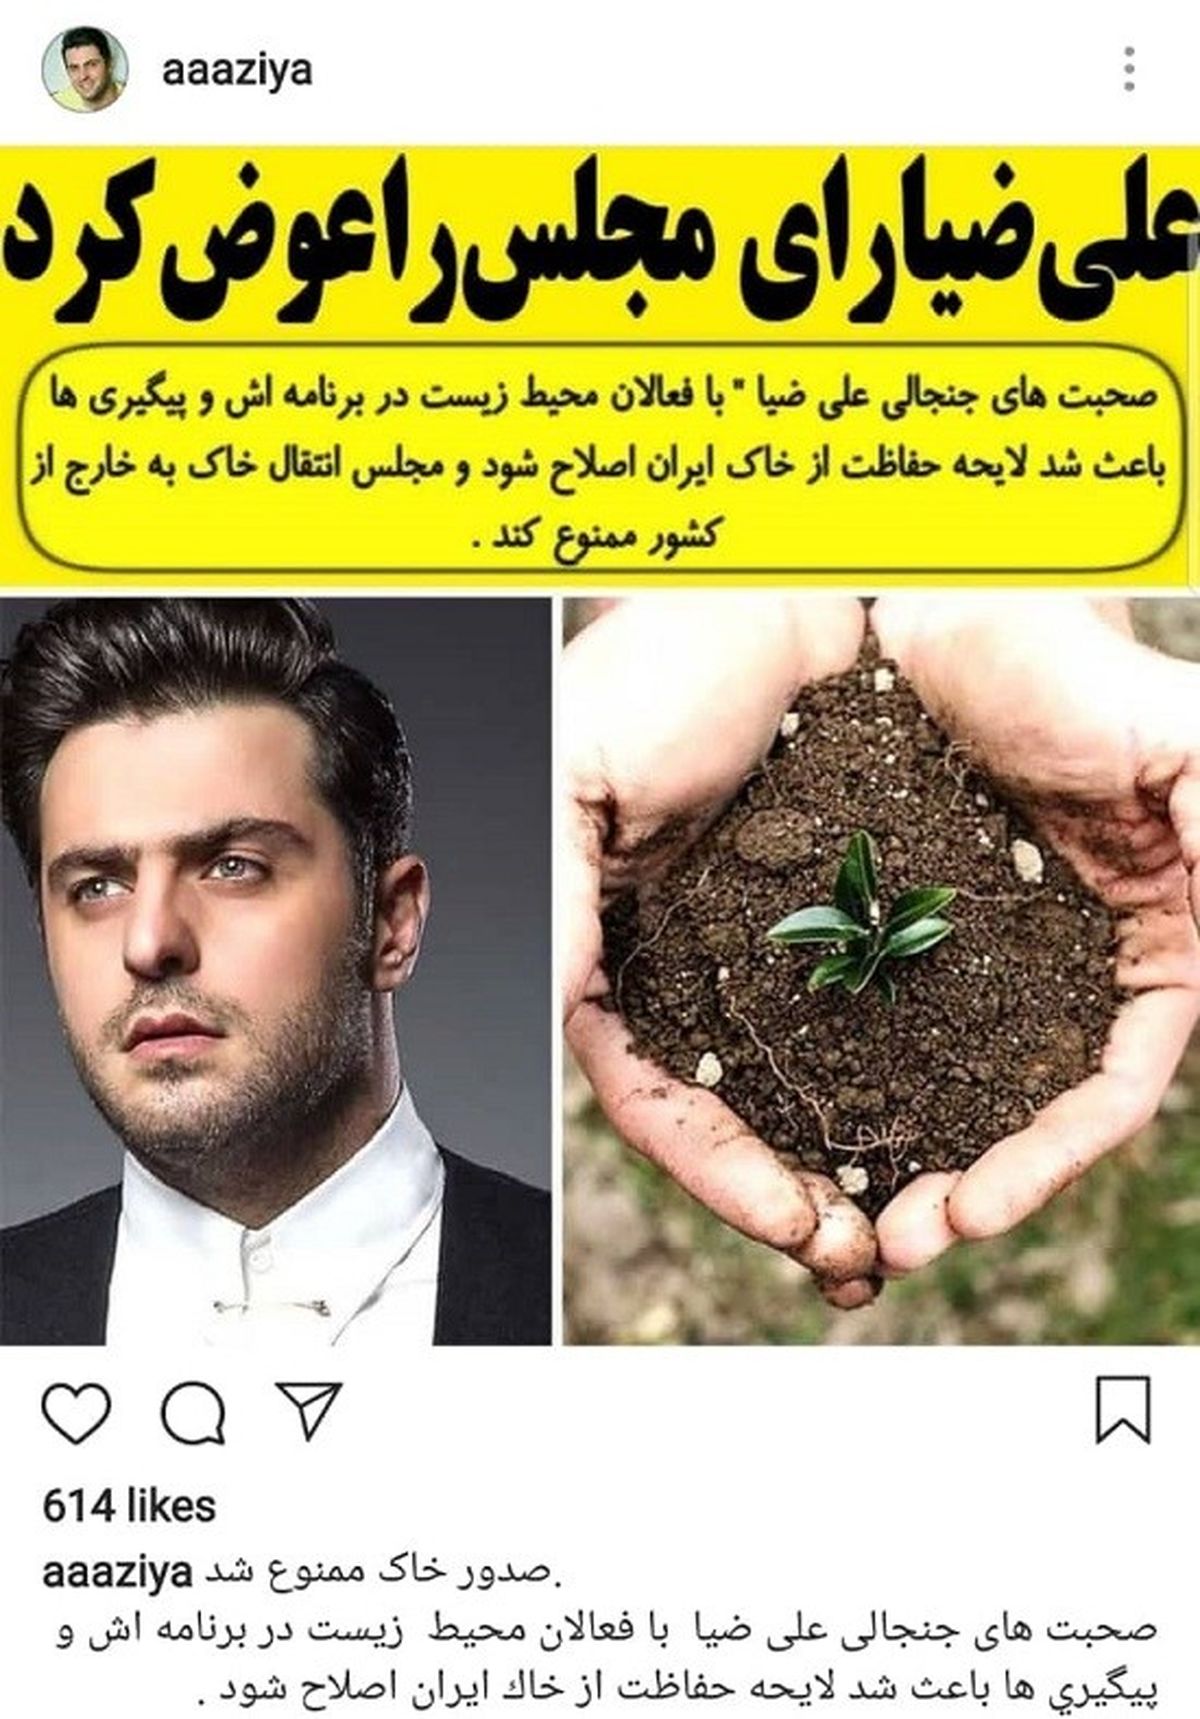 علی ضیا، رأی مجلس را درباره خاک ایران عوض کرد